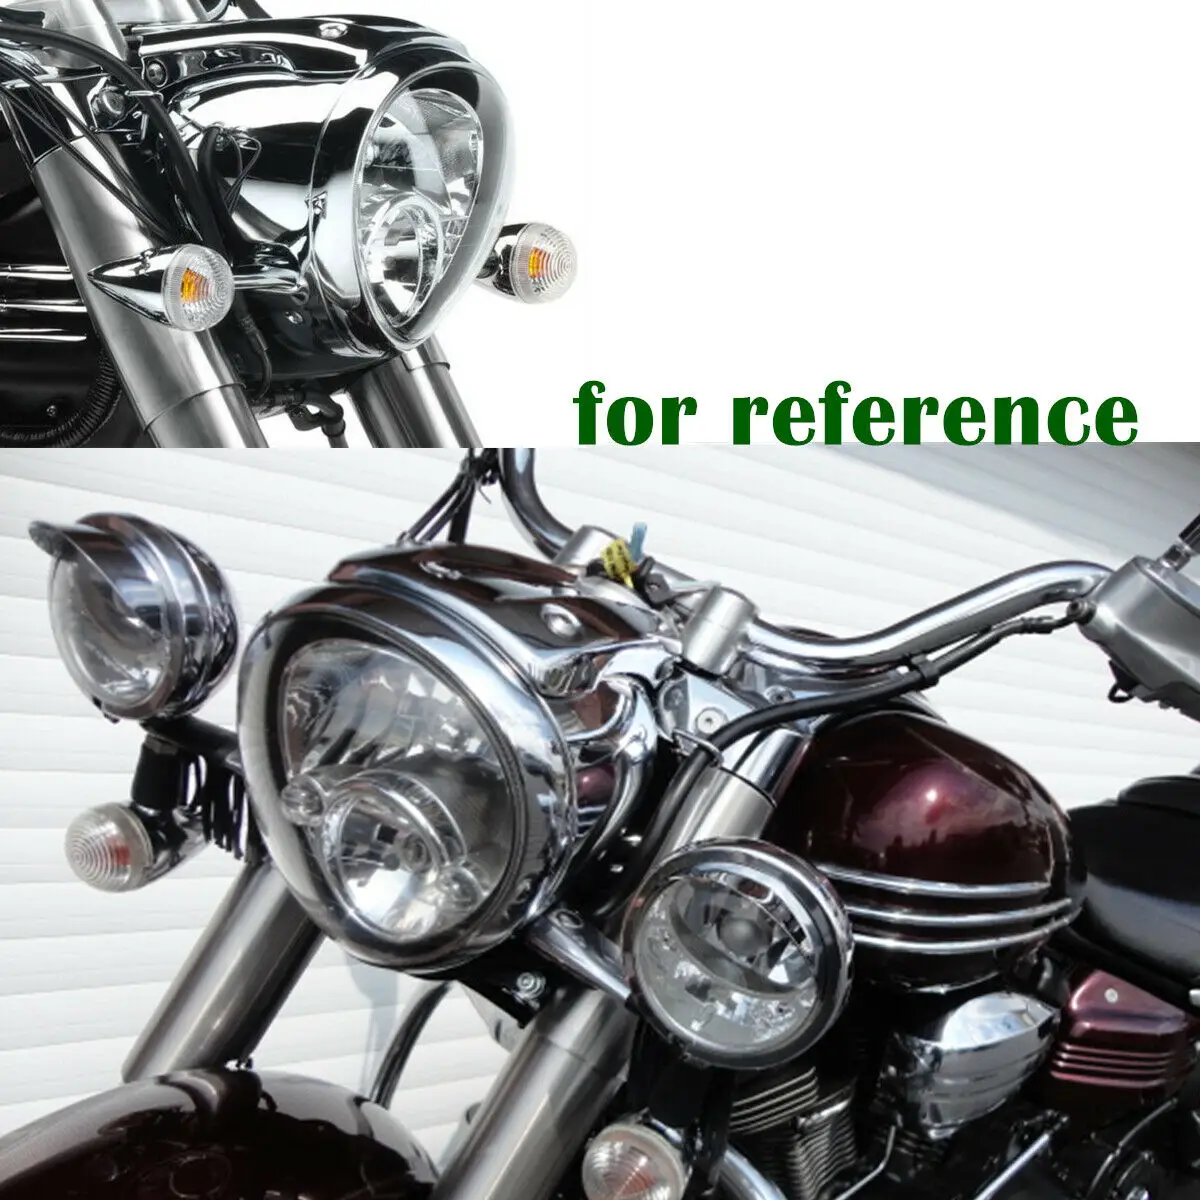 Передние фары для мотоцикла используется OEM Лампа в сборе для Yamaha Stratoliner S/Deluxe XV1900 2006-16